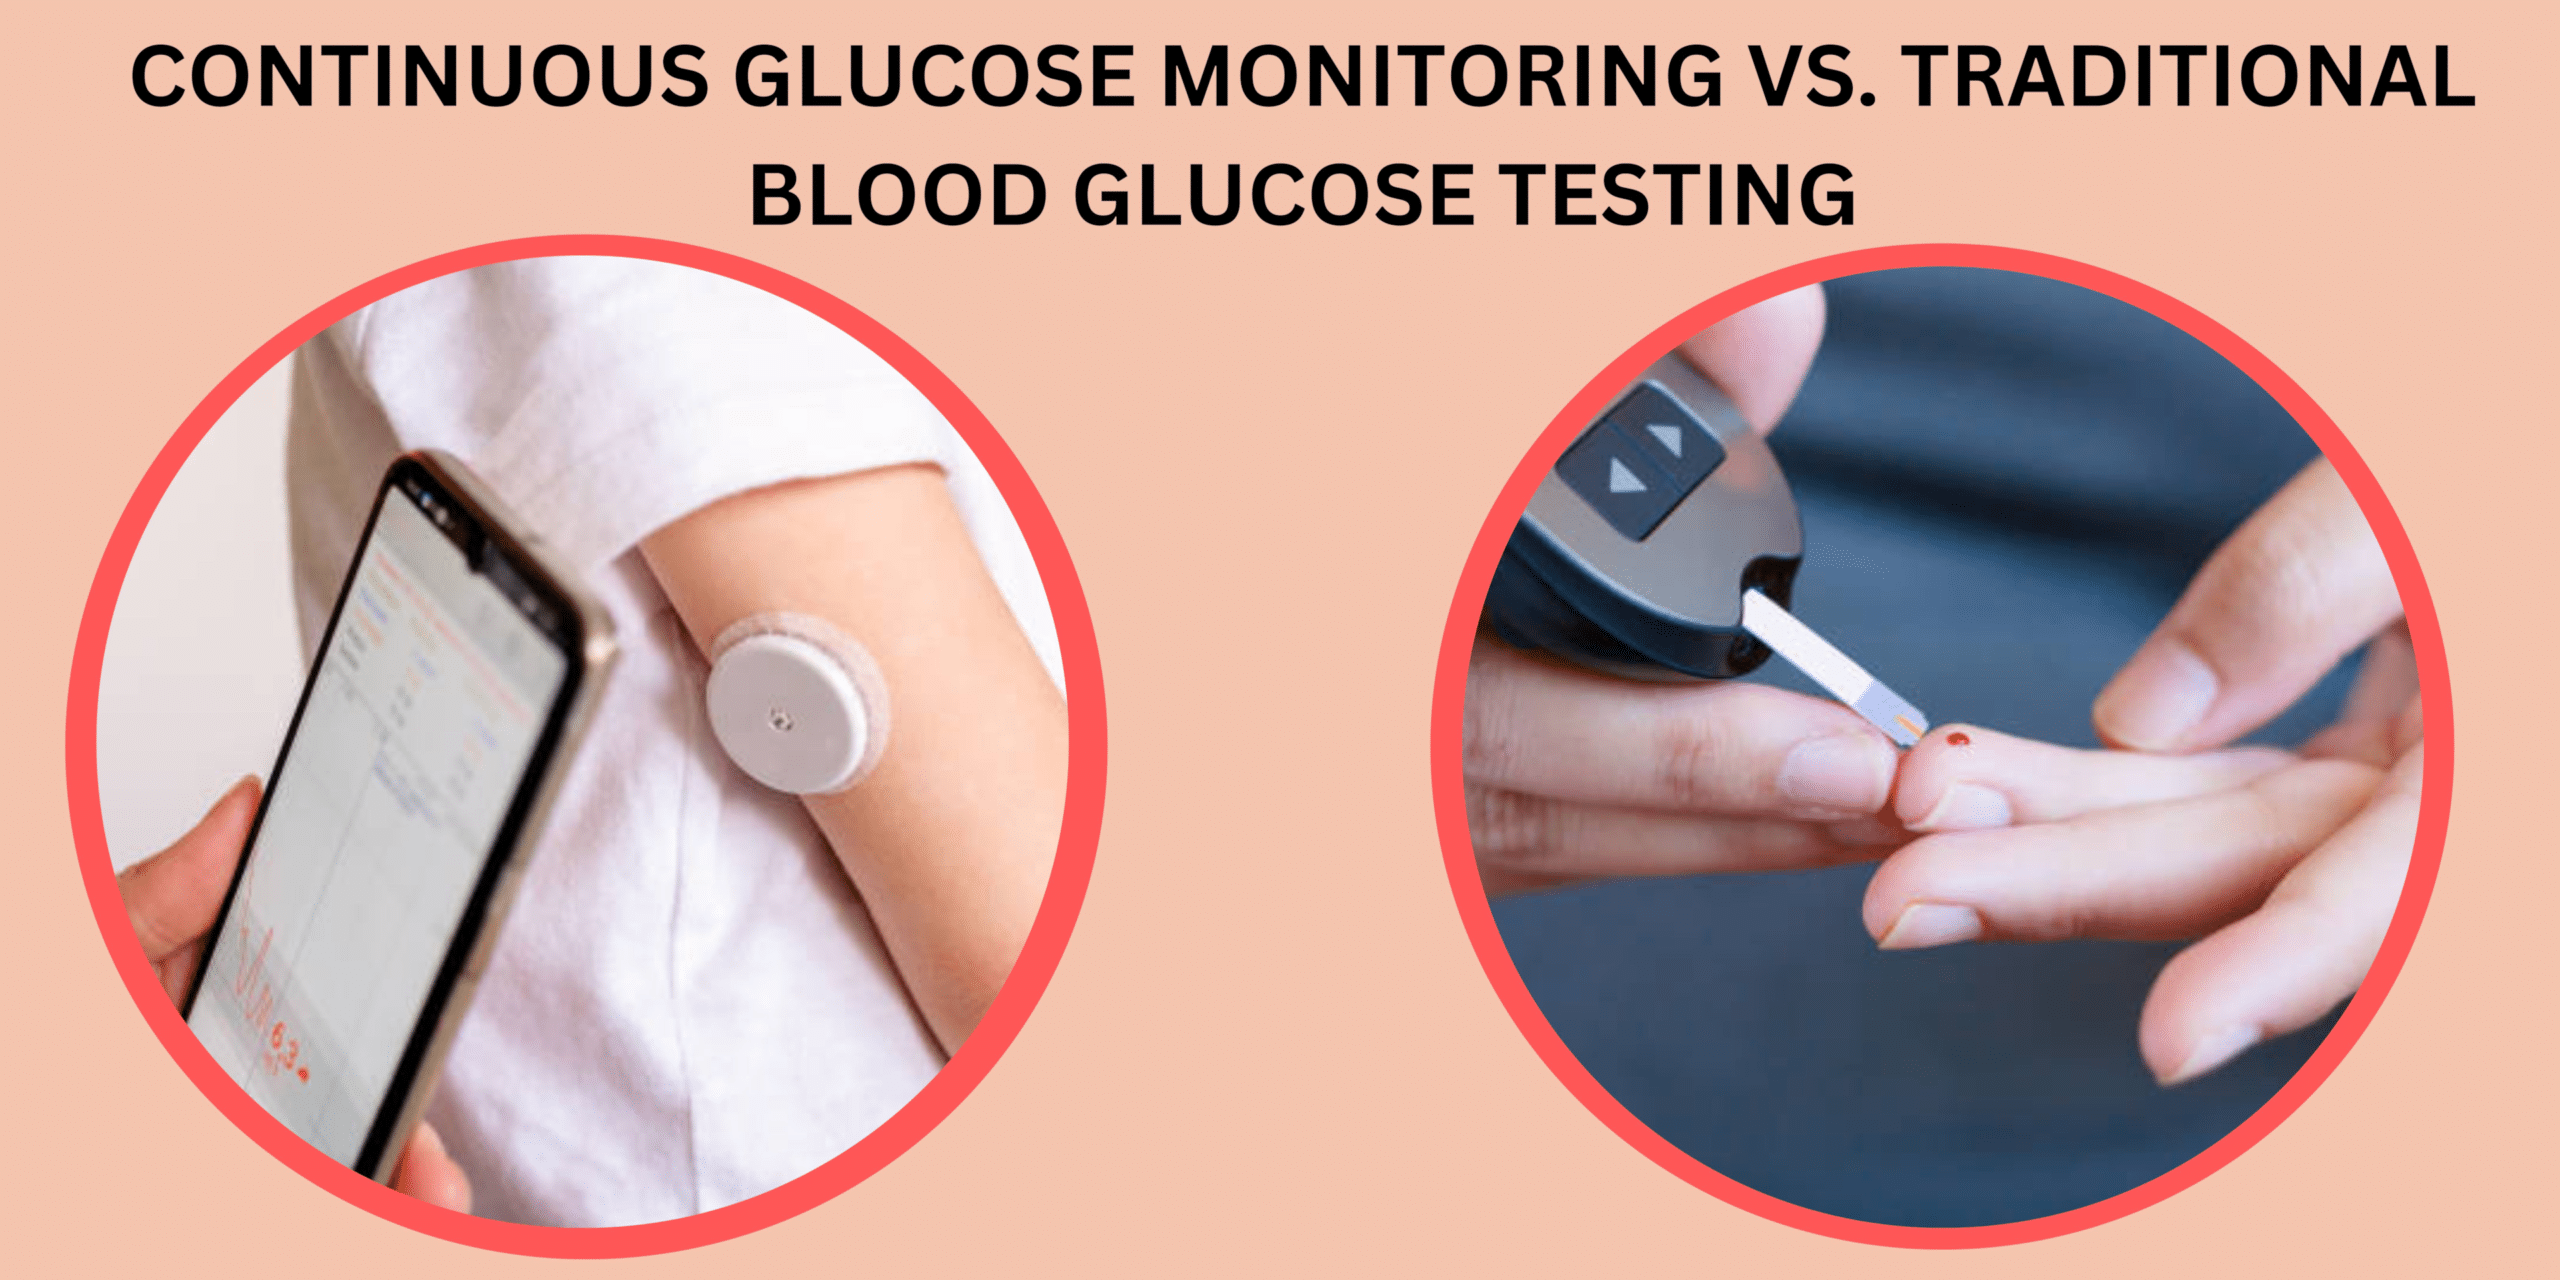 継続的な血糖モニタリングと比較に関する記事の画像。 従来の血糖検査